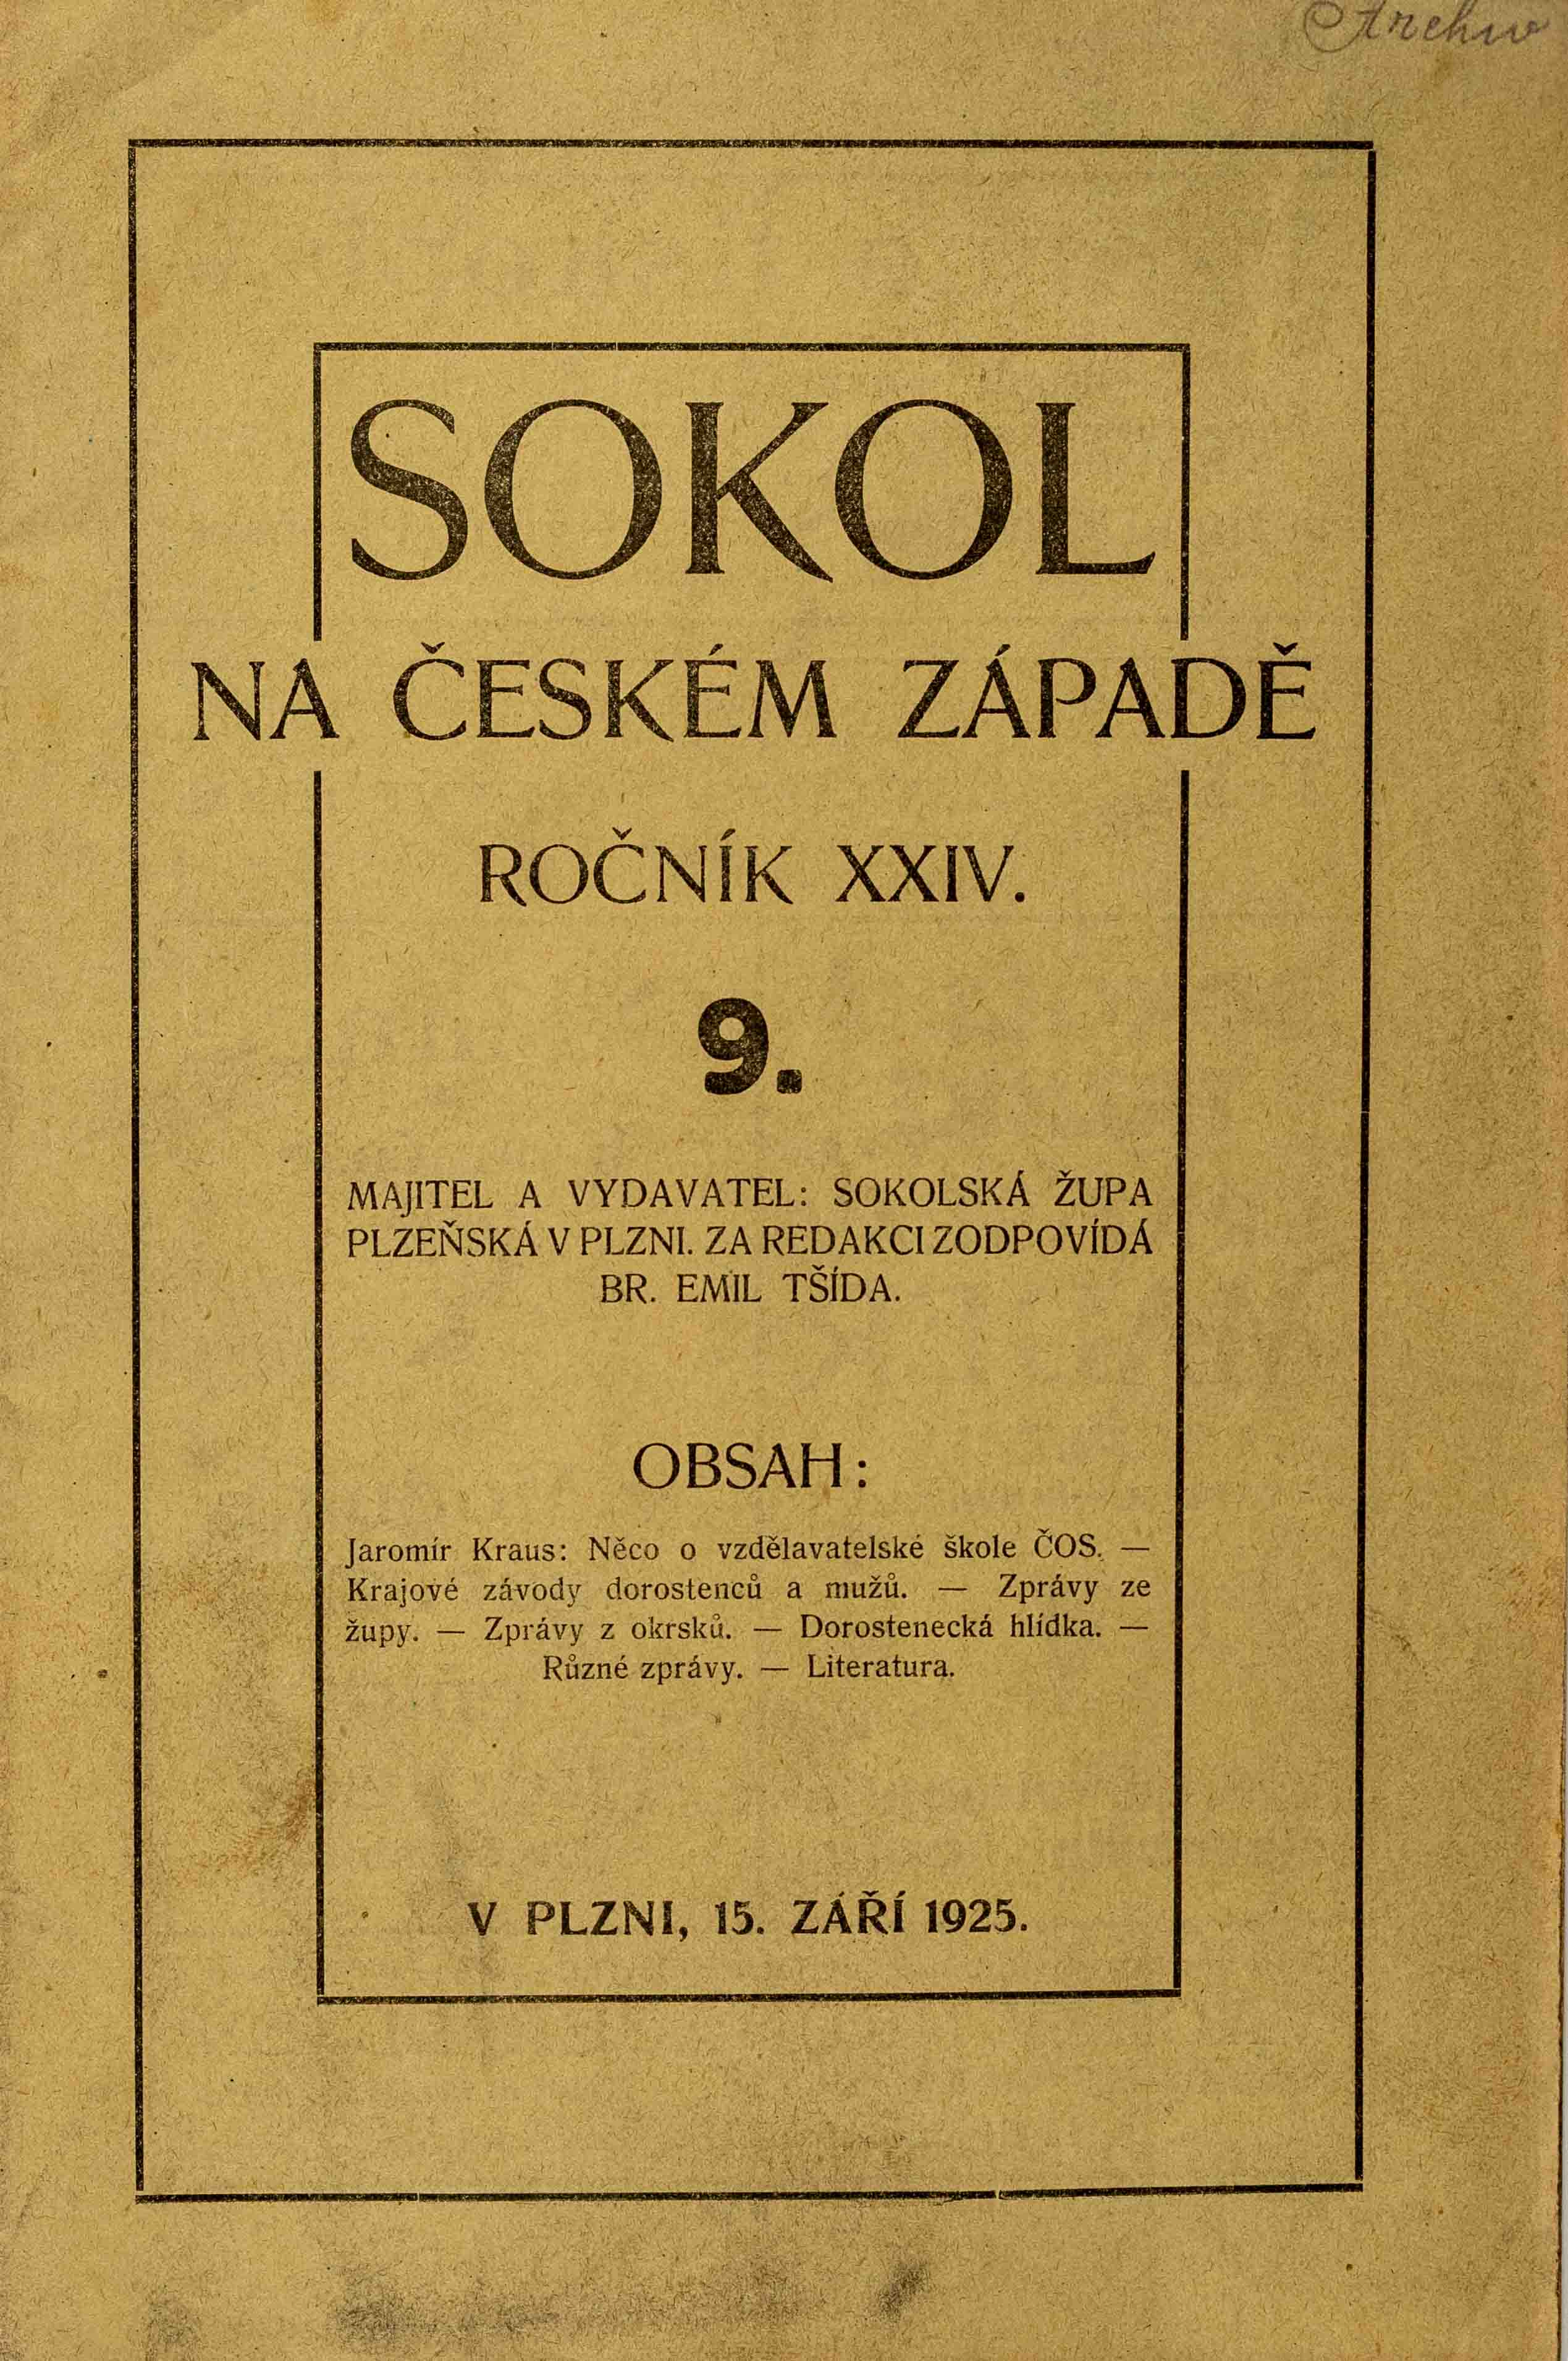 Sokol na českém západě, 9/1925